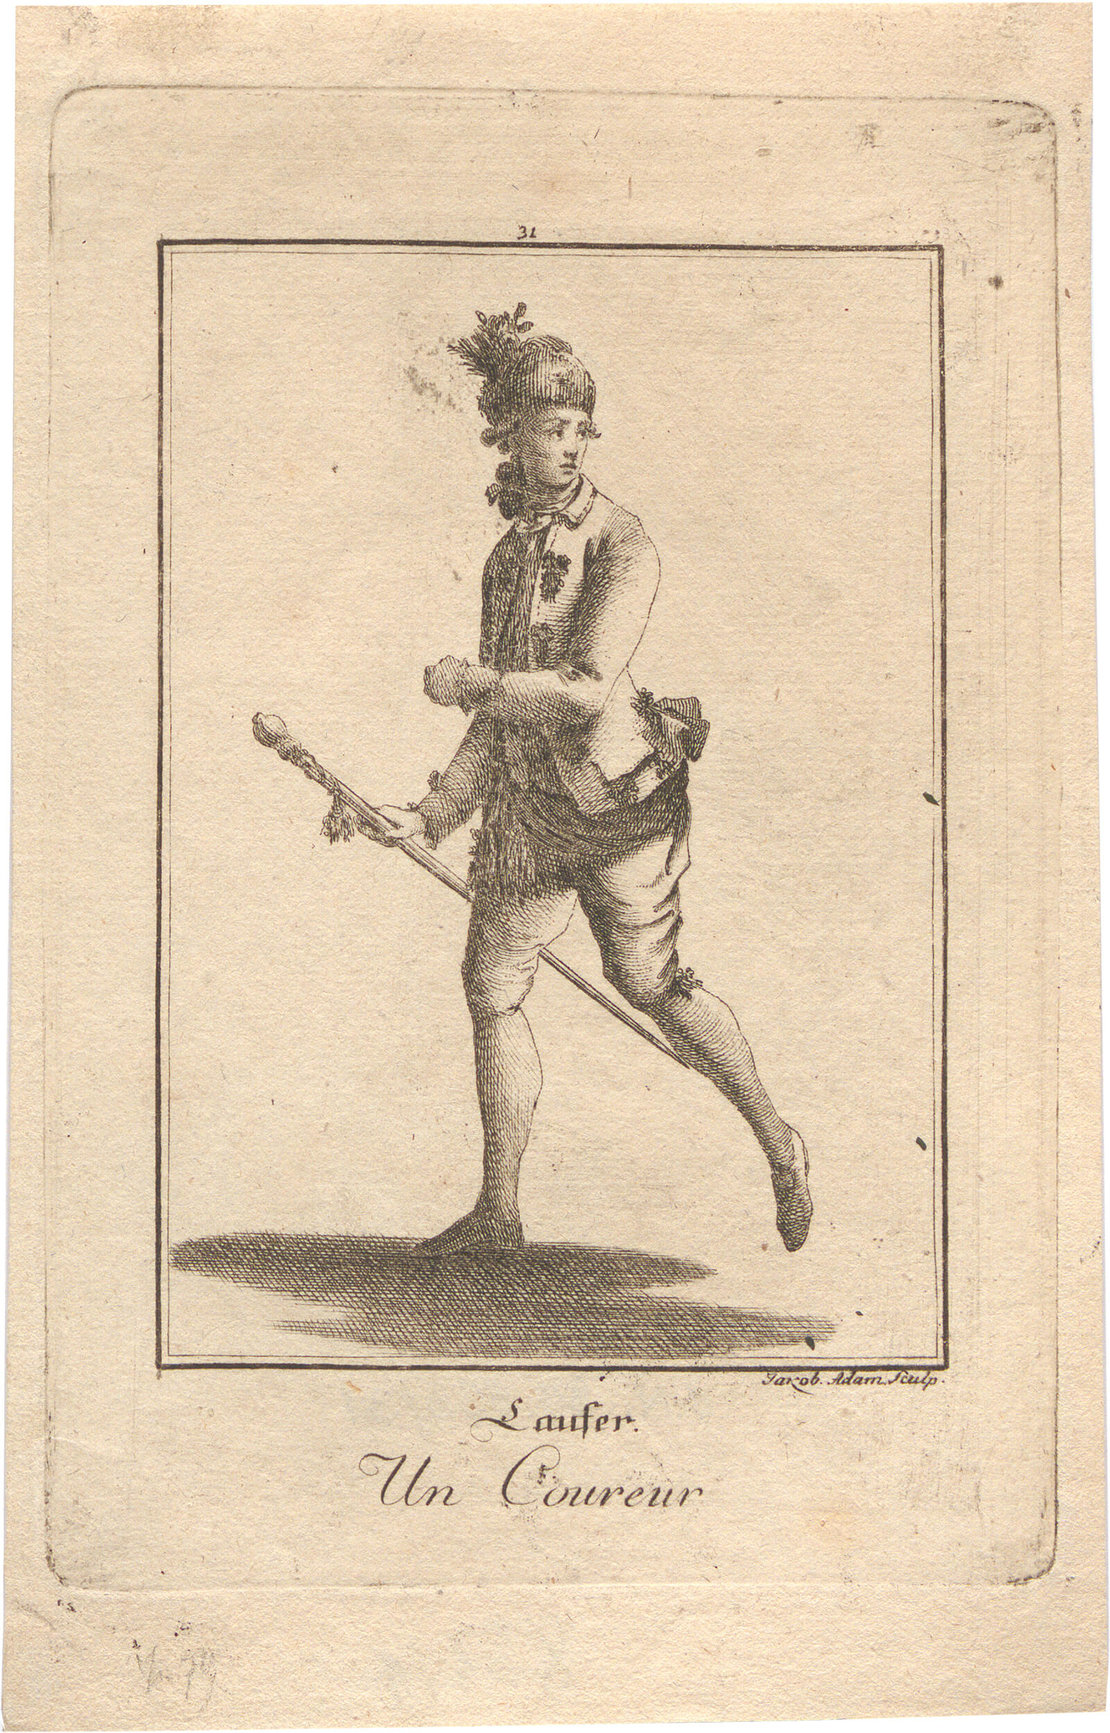 Professionelle „Laufer“ waren im 18. Jh. im Einsatz, um Kutschen eine freie Fahrt zu gewähren. Kupferstich, 1777, Wien Museum; Ölgemälde, um 1760, Wien Museum 